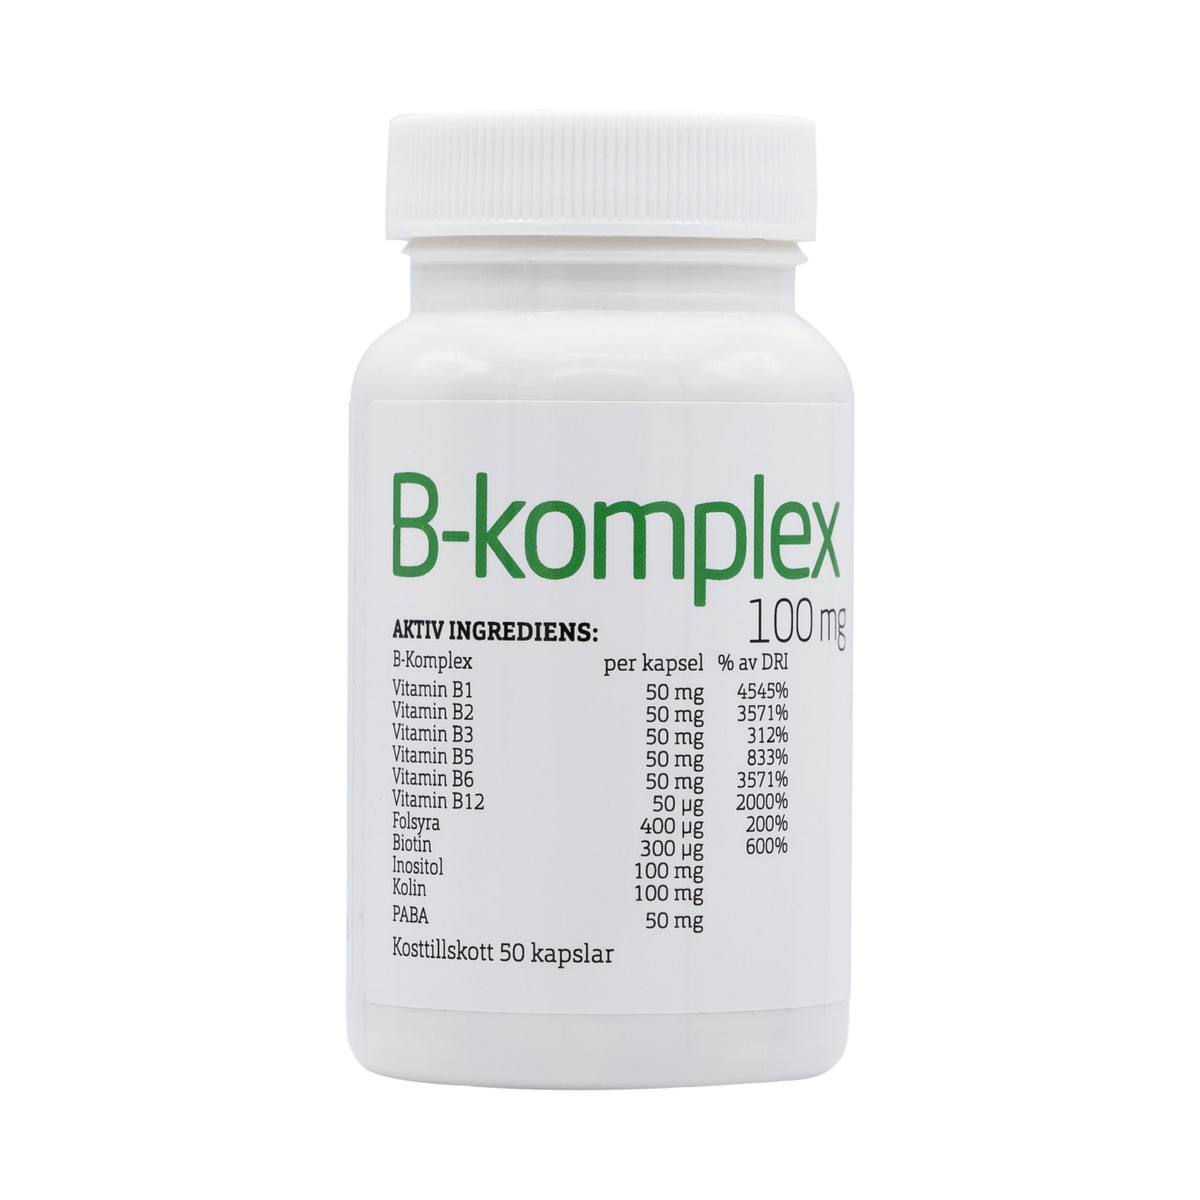 B-vitaminkomplex